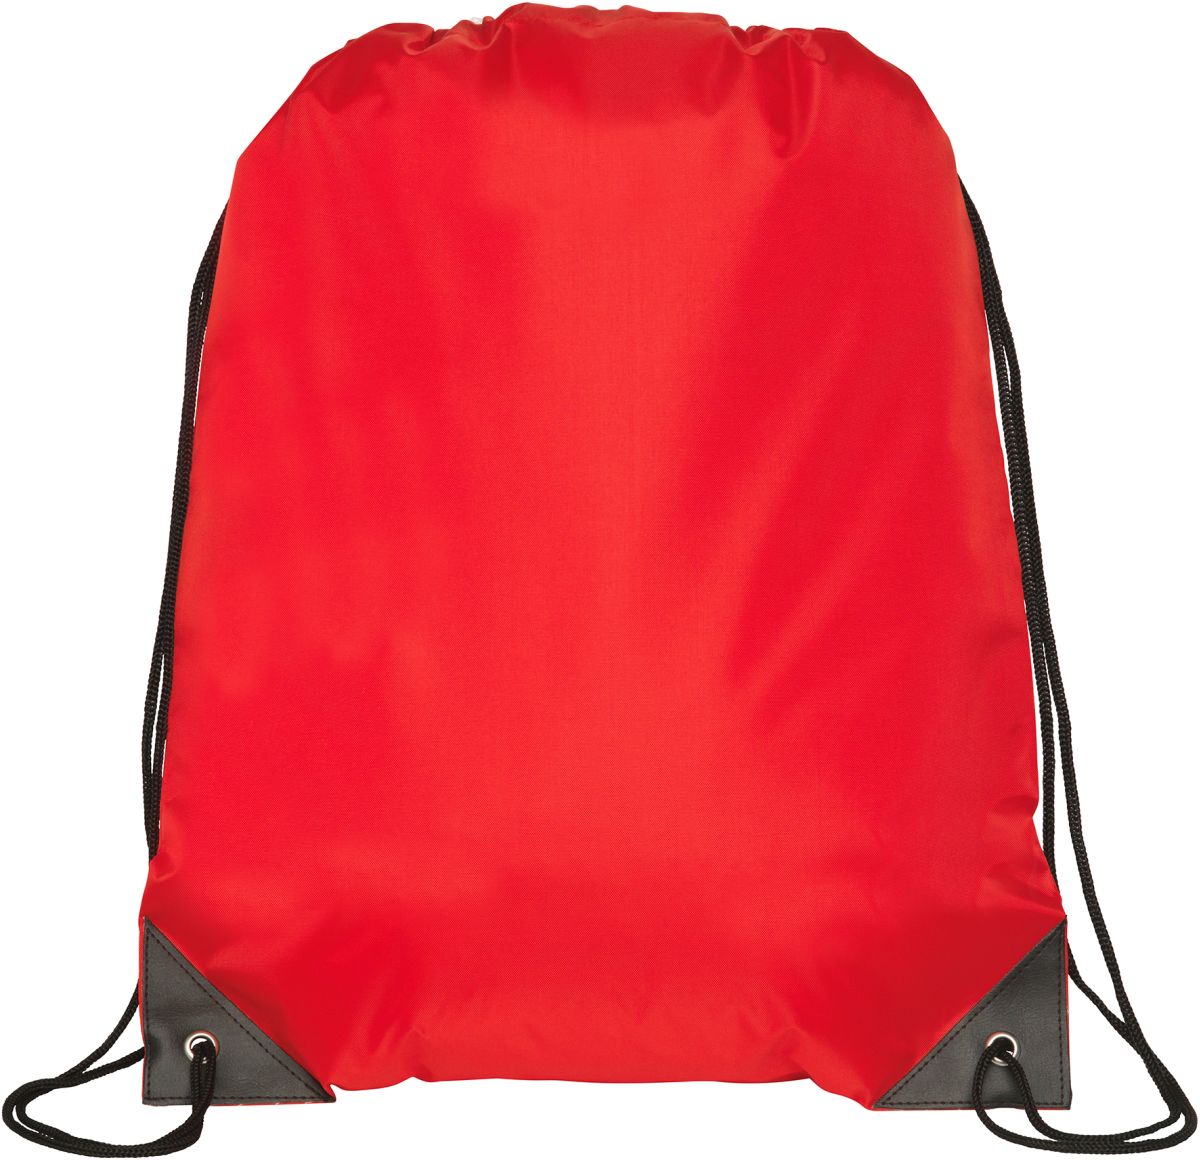 Cudham Promo Drawstring Bag | UK Corporate Gifts